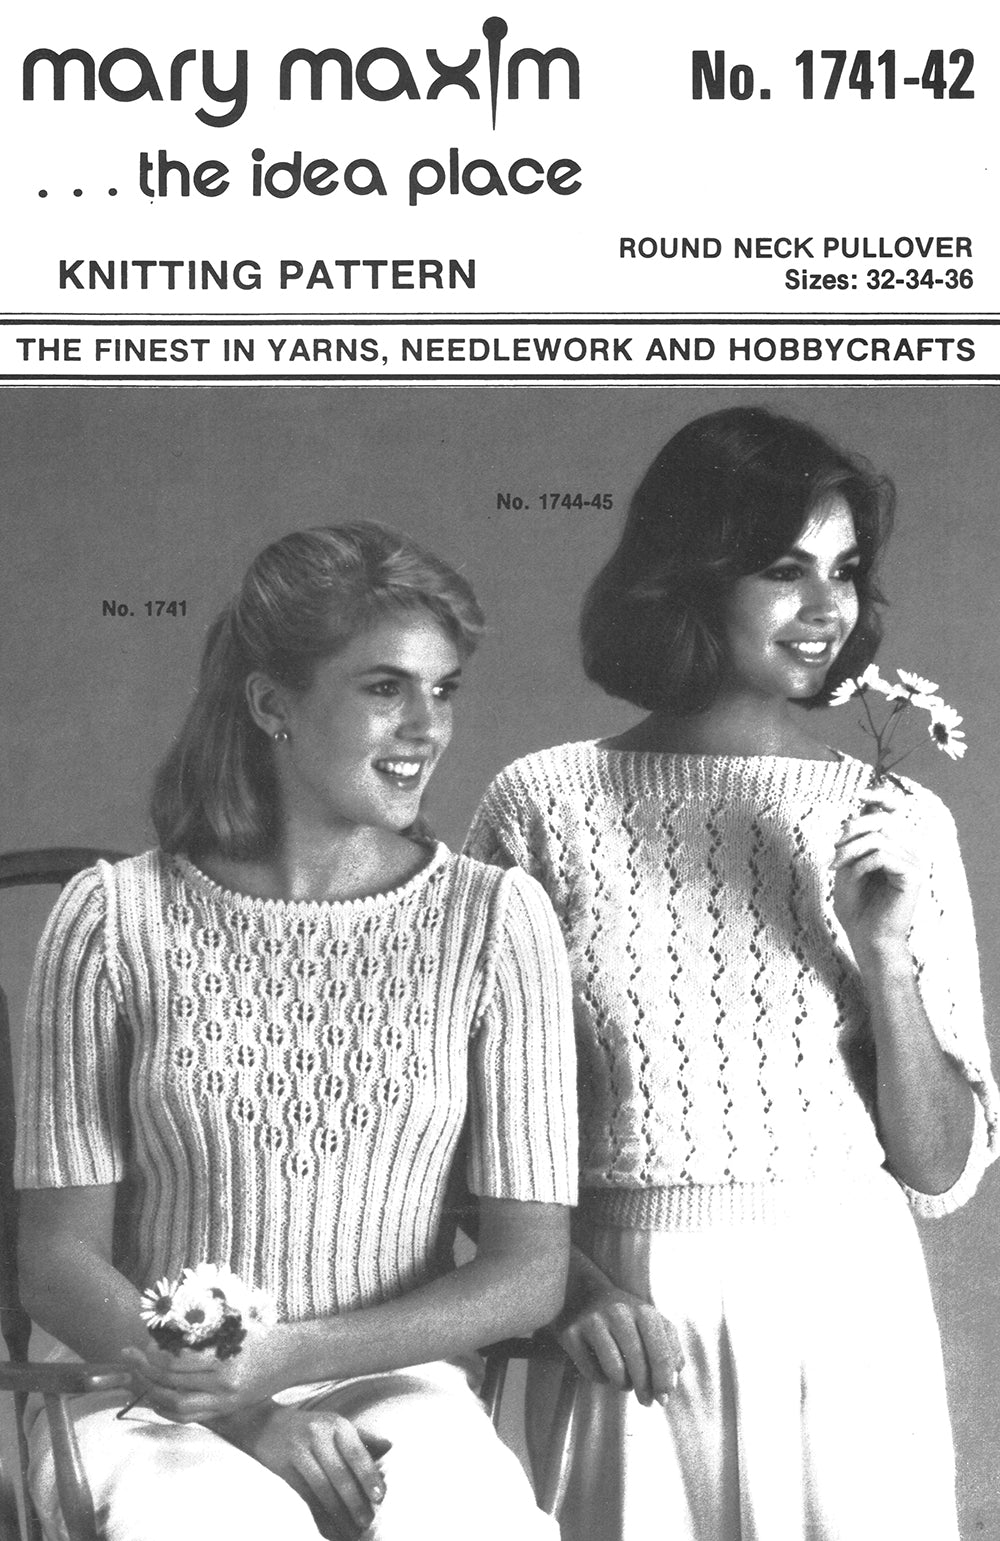 Round Neck Pullover Pattern